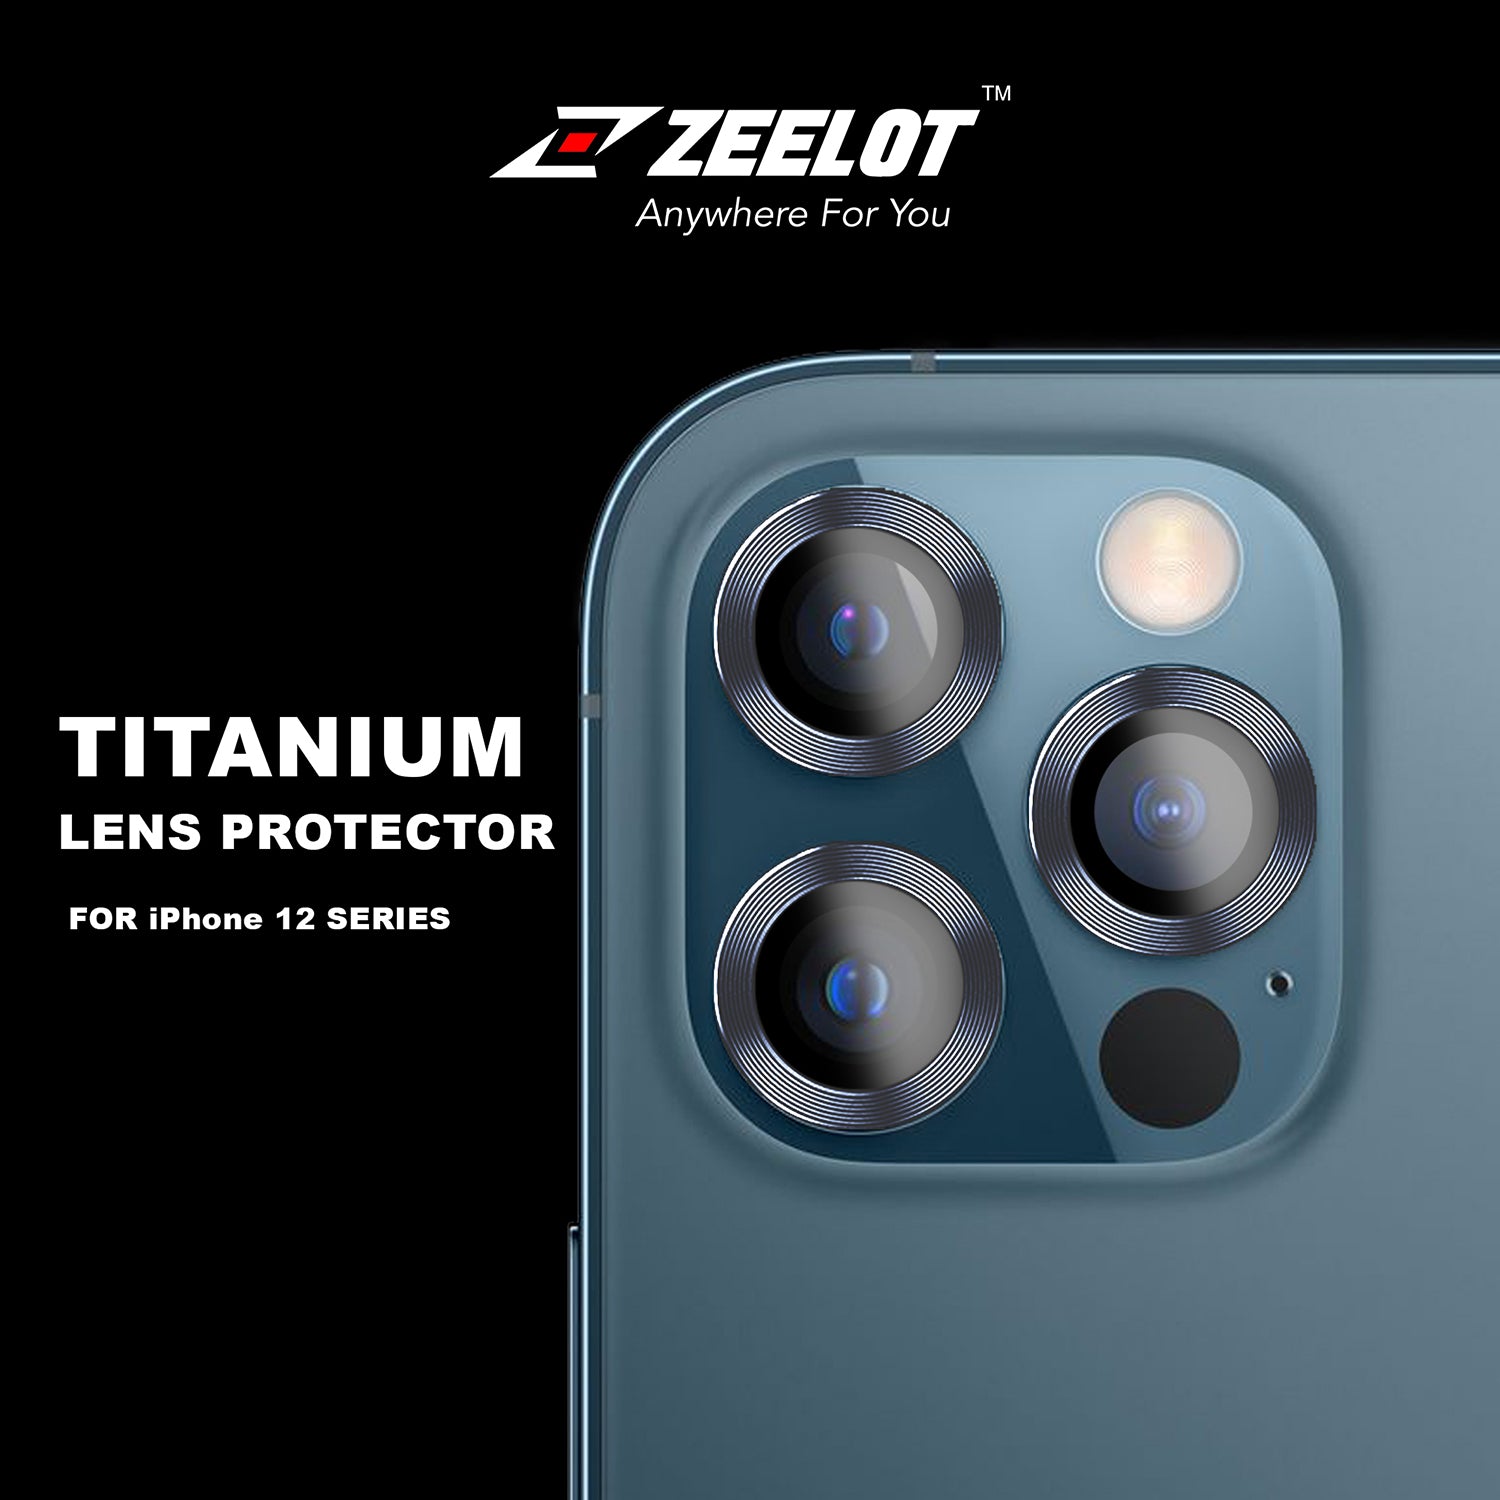 ZEELOT Titanium Steel Lens Protector for iPhone 12 Pro Max 6.7" (Three Cameras), Navy Blue Default ZEELOT 